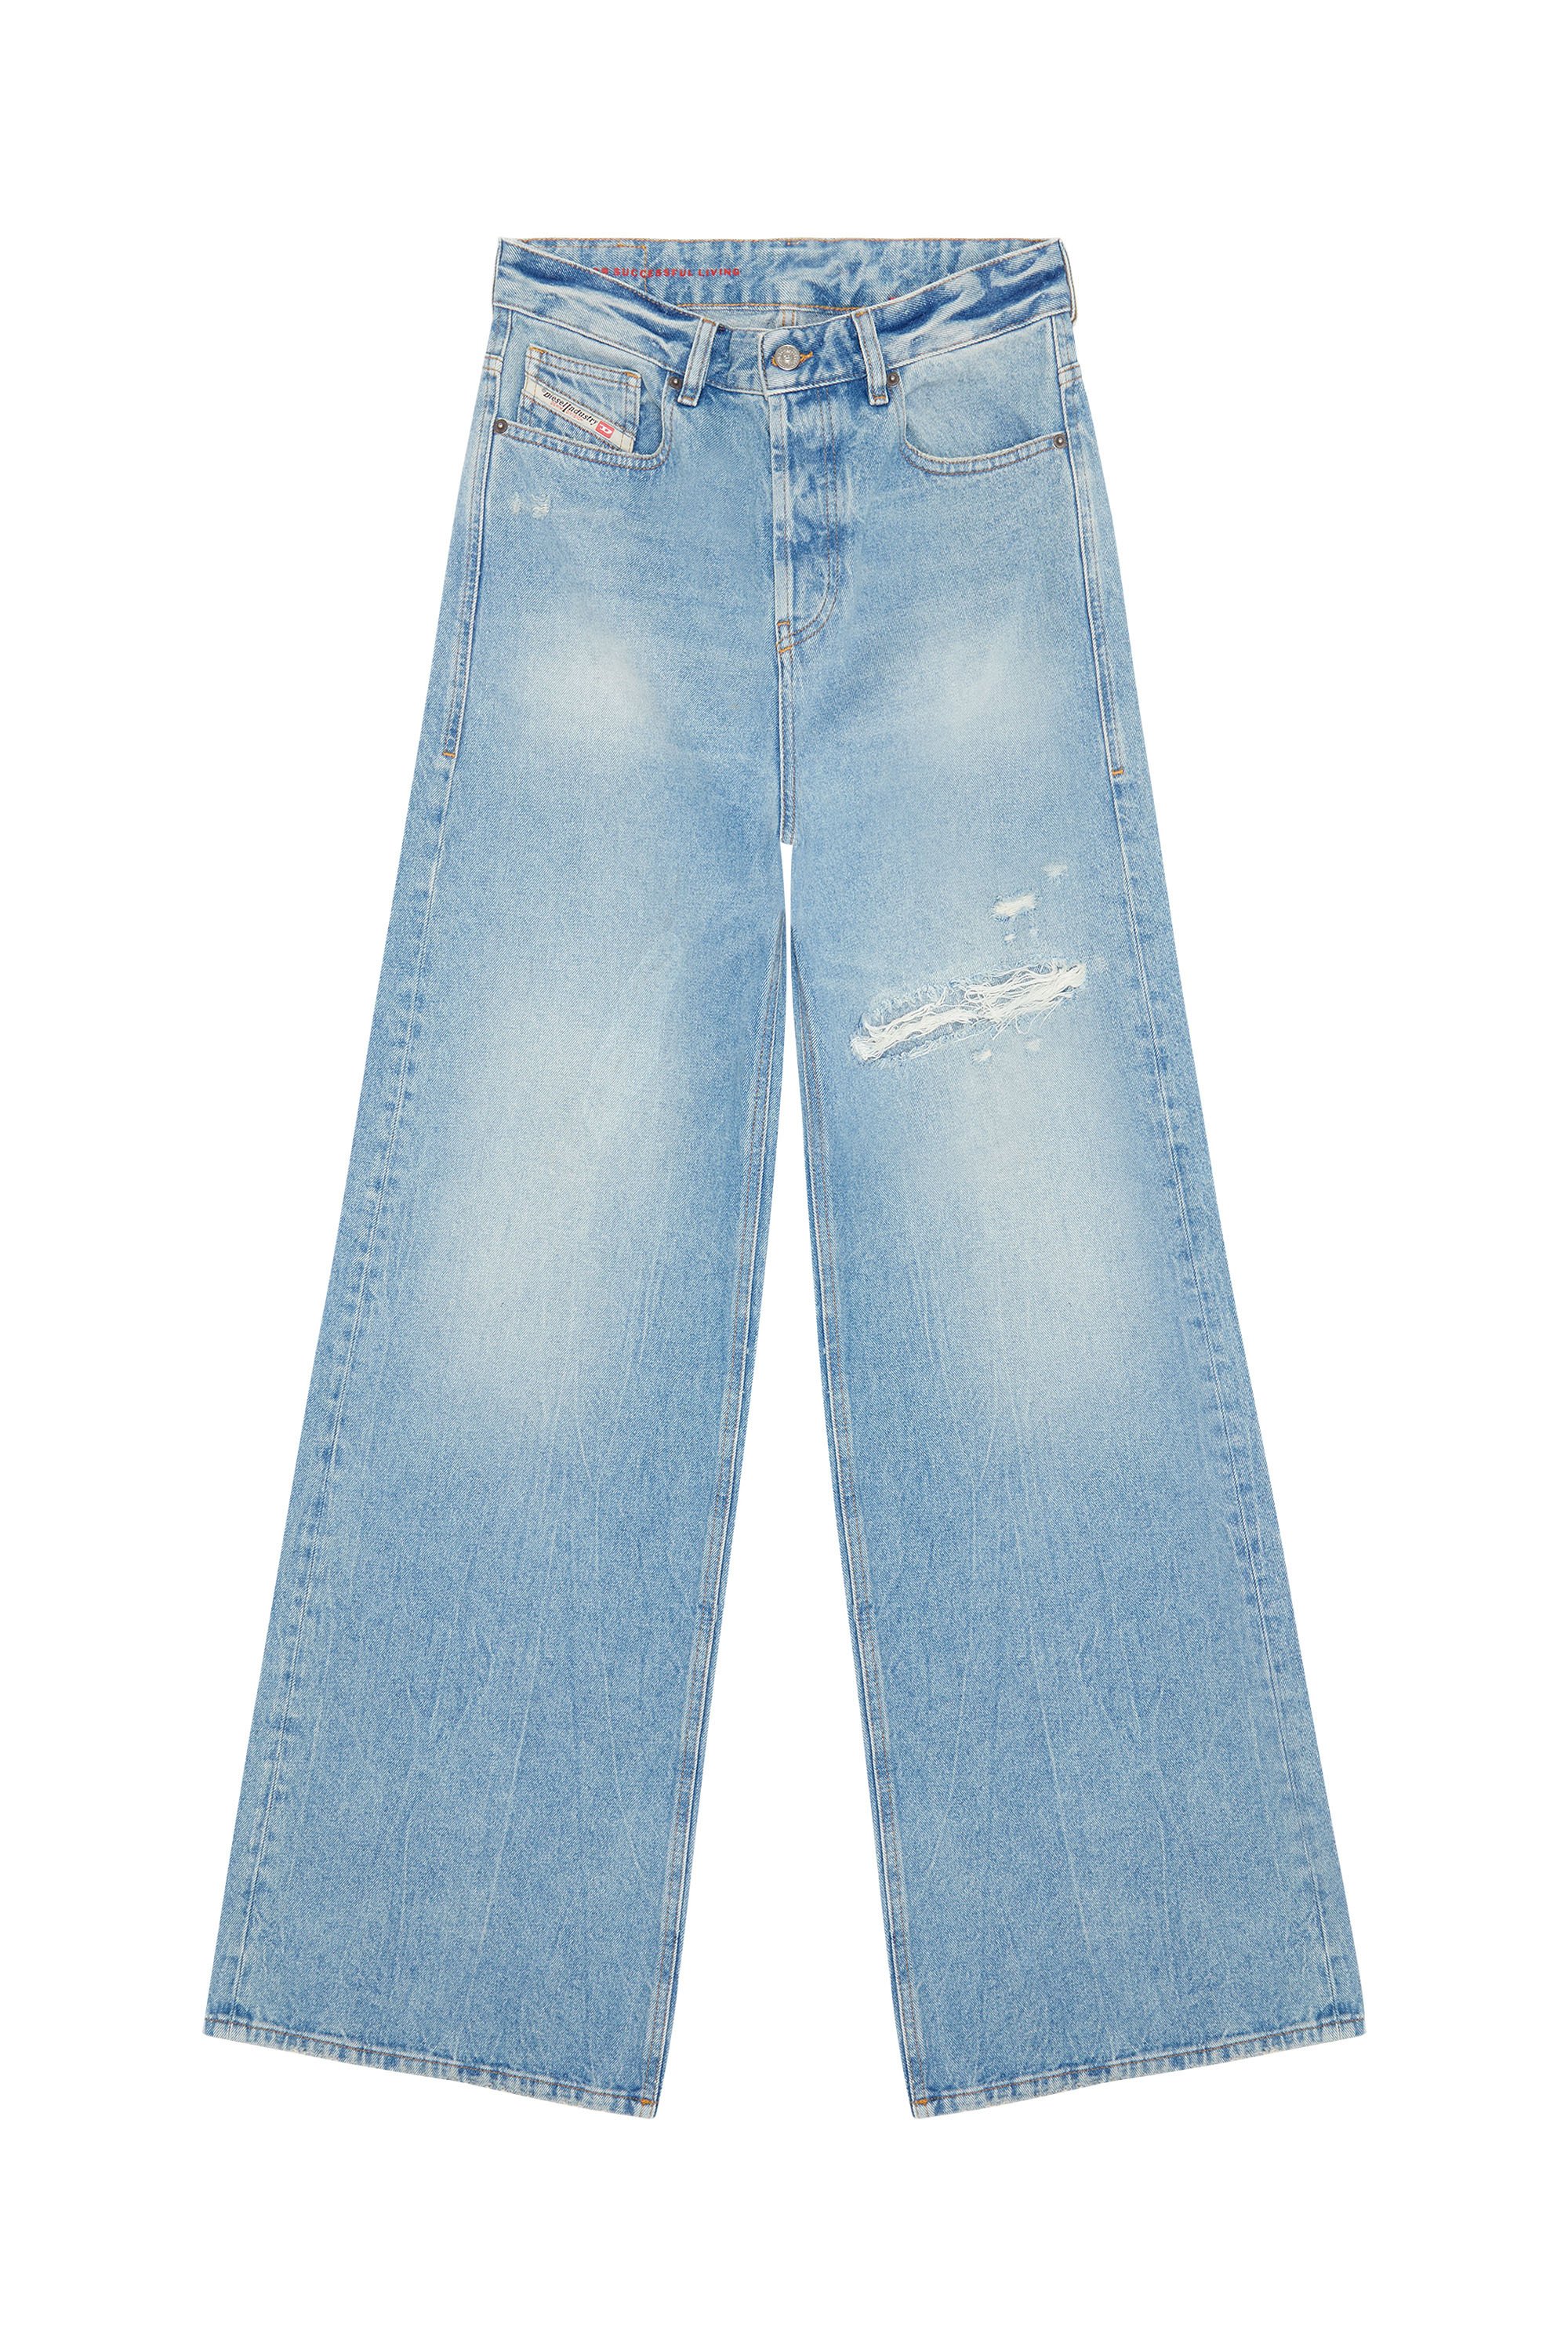 Diesel - Donna Straight Jeans 1996 D-Sire 09E25, Blu Chiaro - Image 3